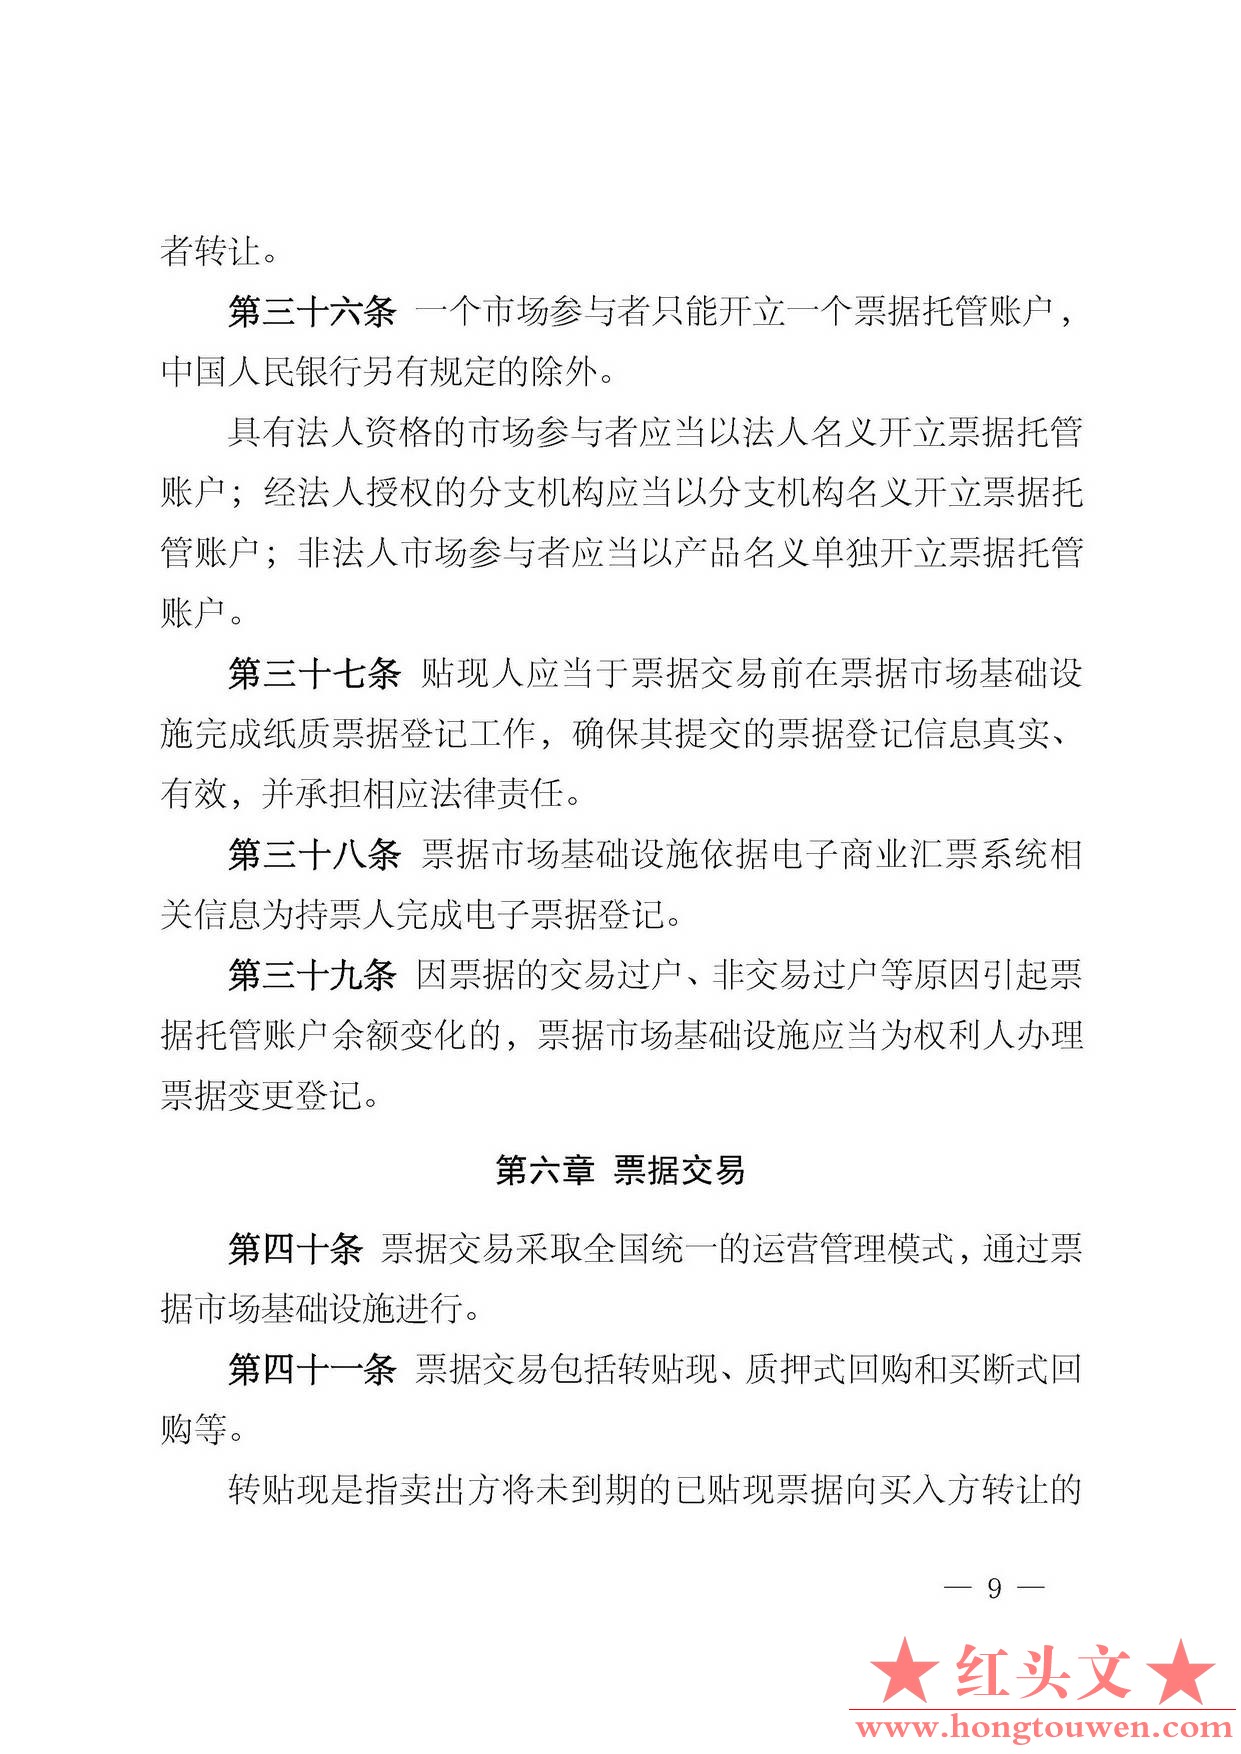 中国人民银行公告[2016]29号-票据交易管理办法_页面_09.jpg